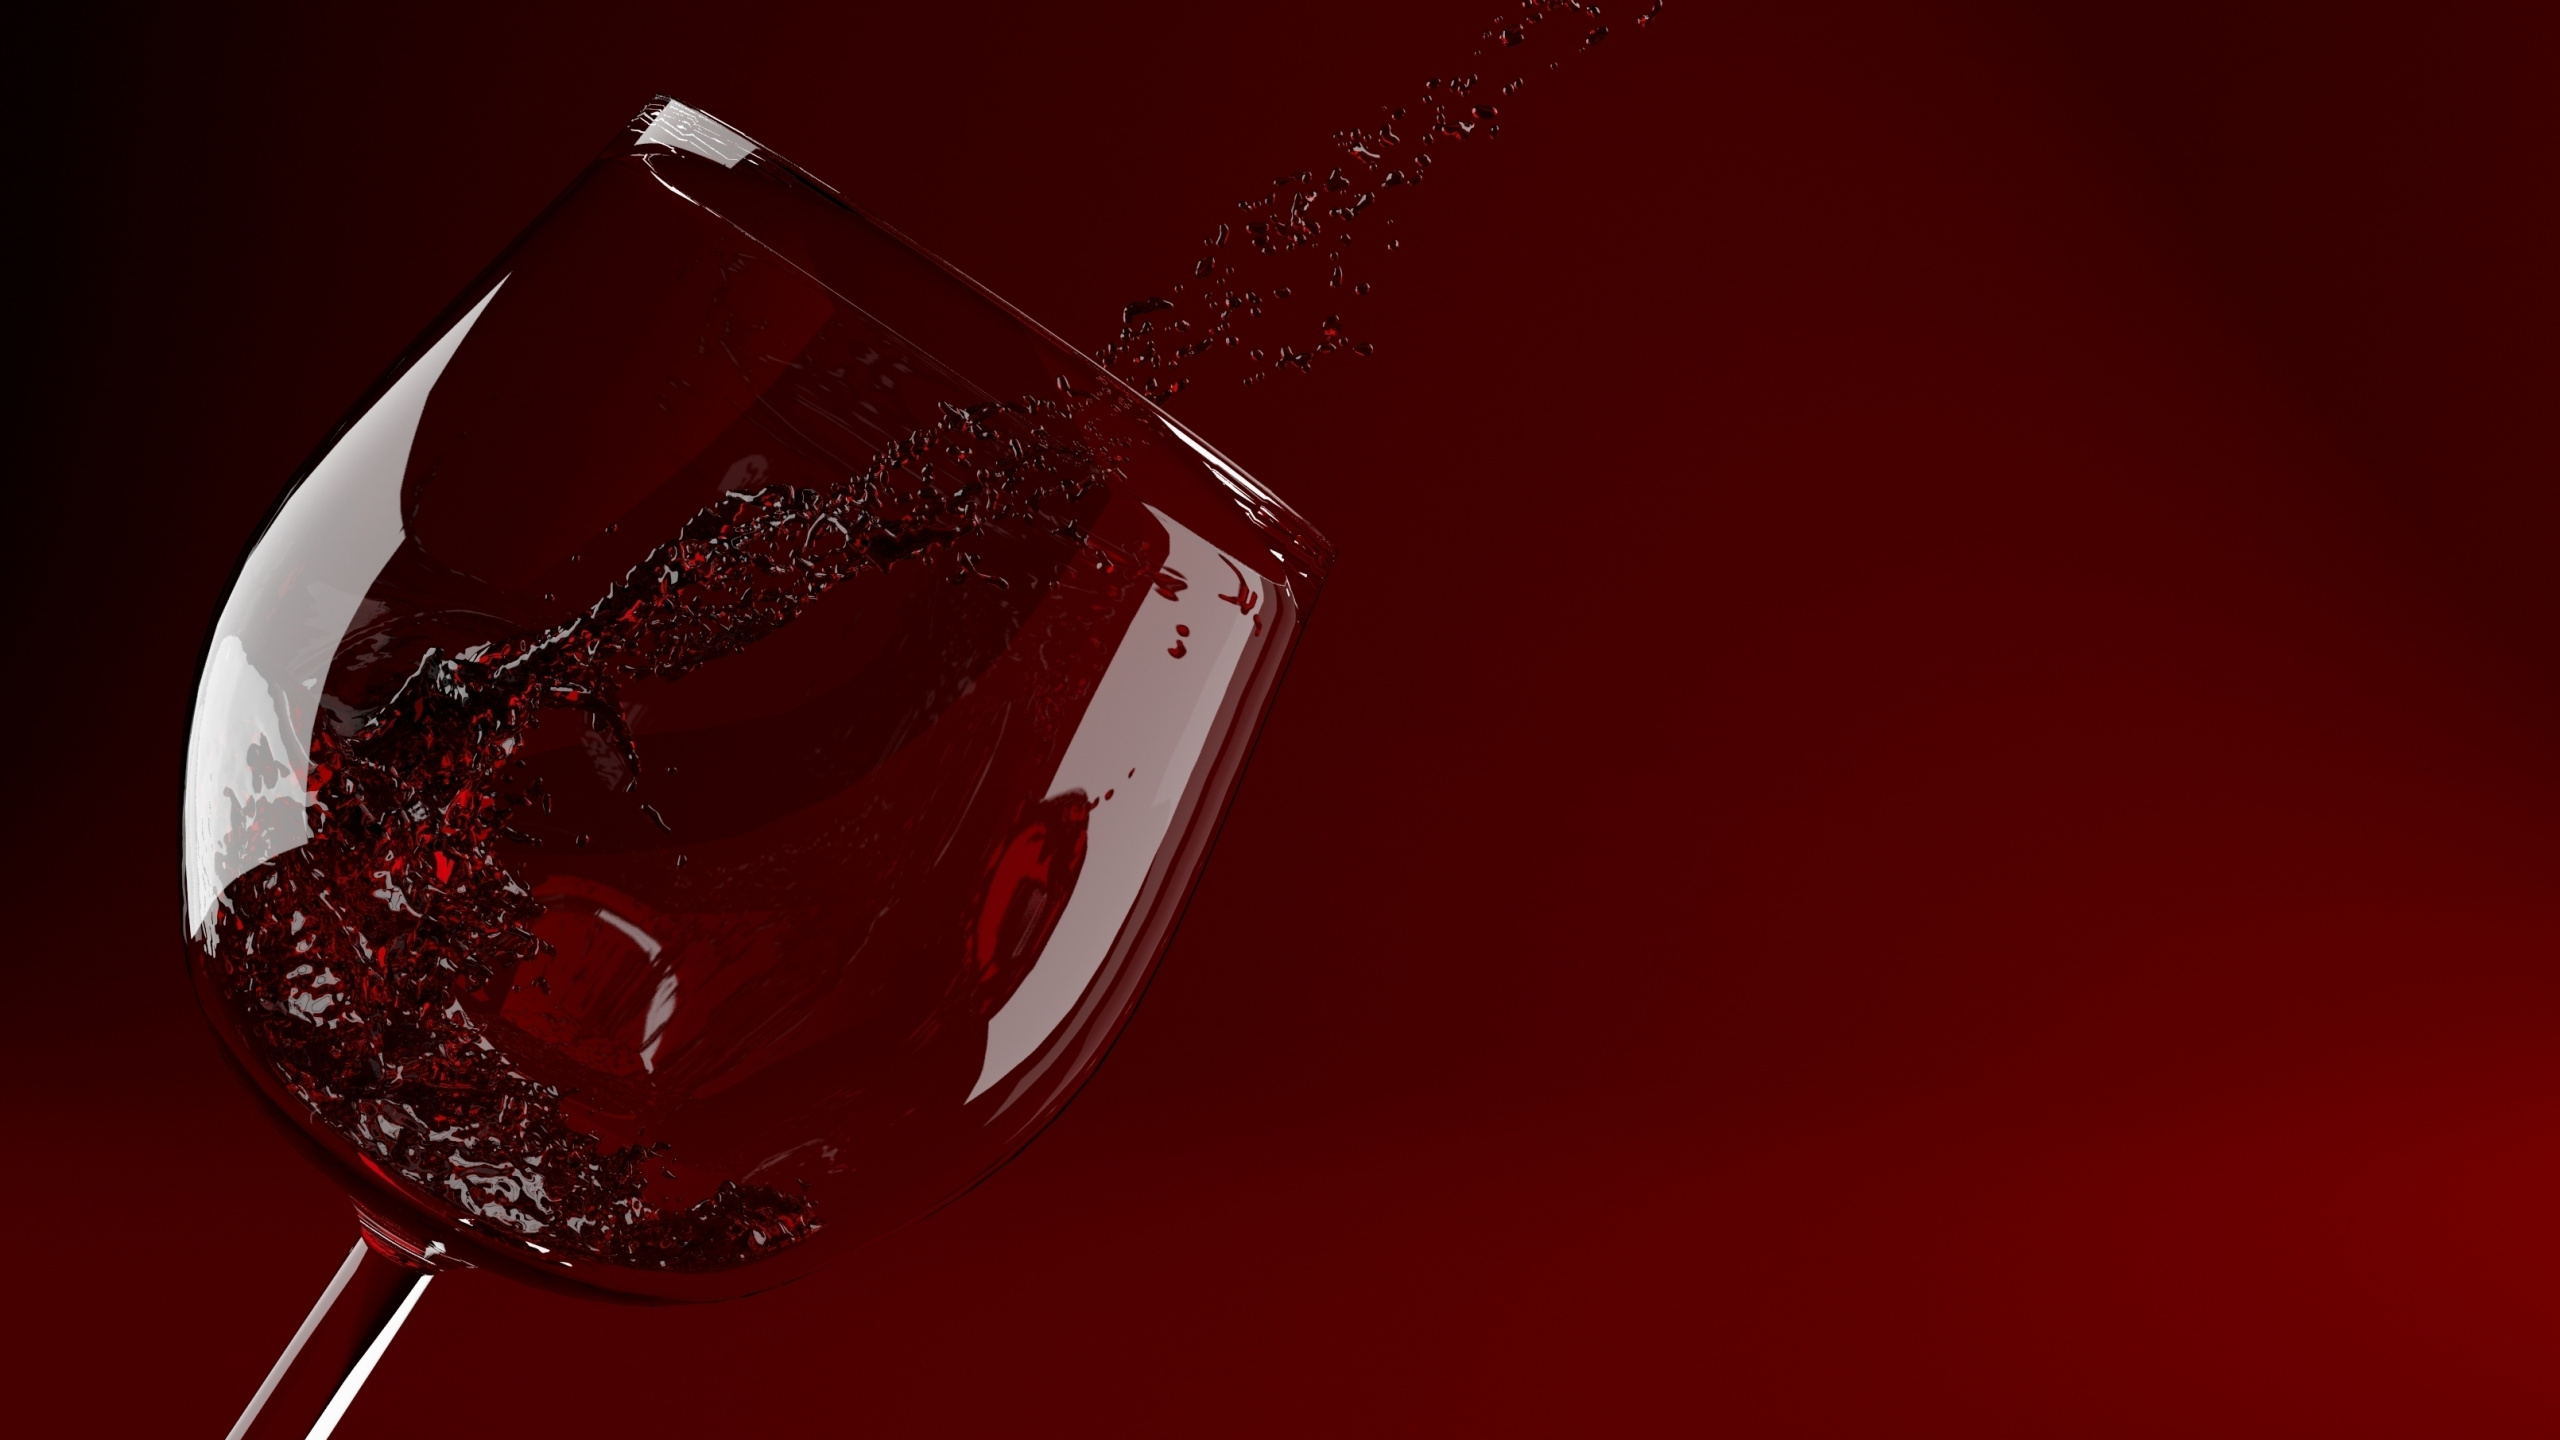 红色的, 葡萄酒杯, 高脚杯, 红葡萄酒, 饮具 壁纸 2560x1440 允许